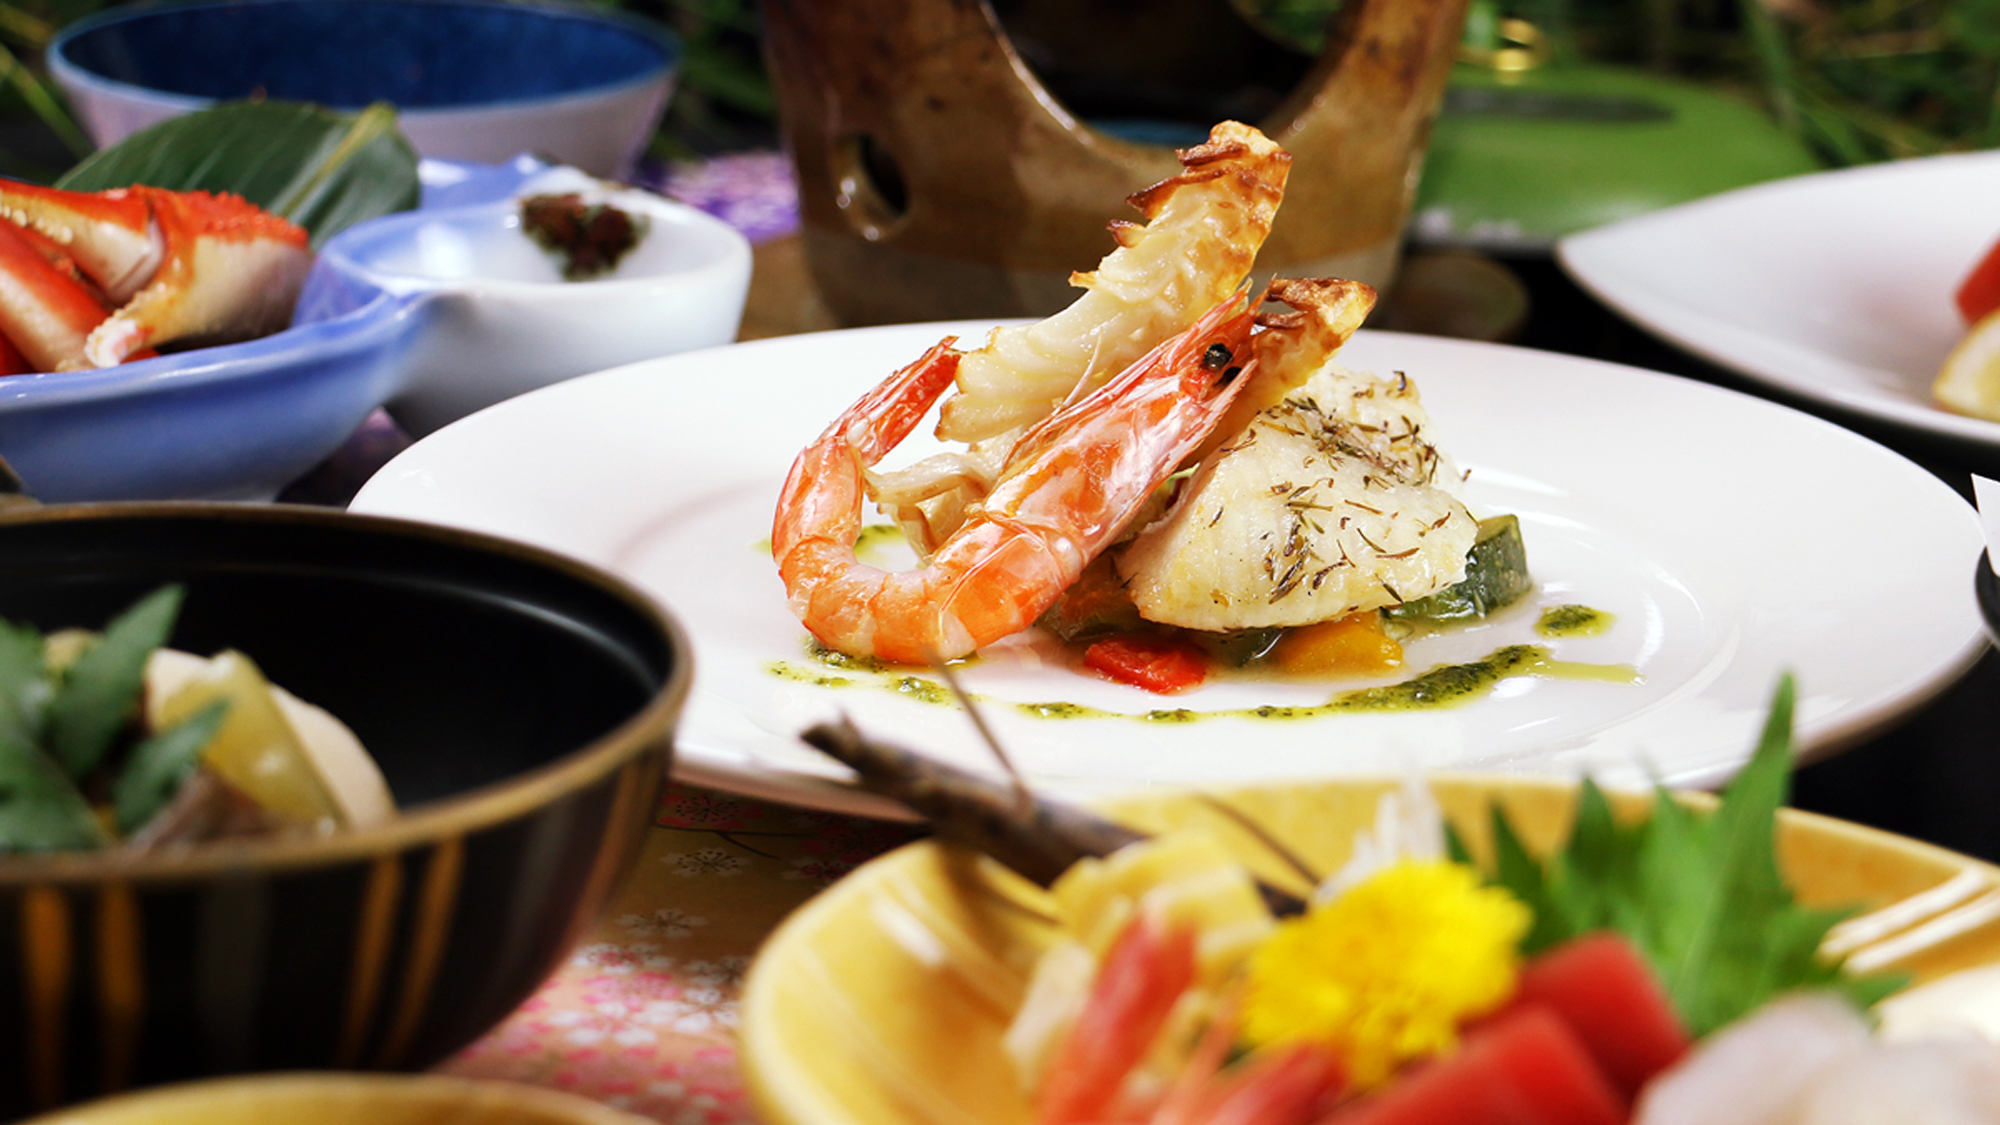 #【日伊コラボ】イタリアンは魚介の旨みを引き出す料理☆日本海の海の幸も美味しさ倍増